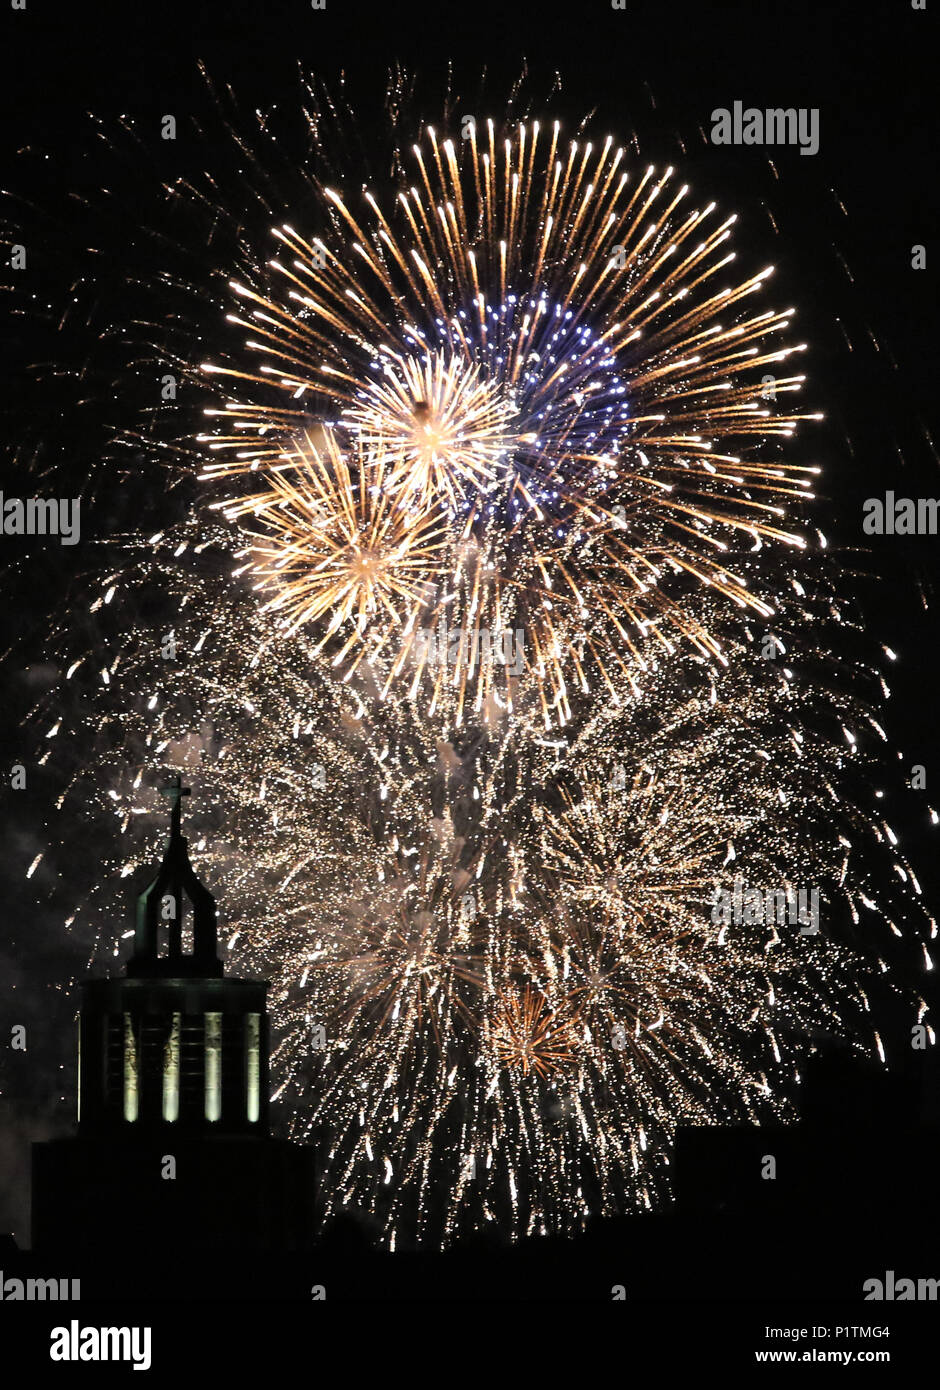 Berlin, Germany, Fireworks Stock Photo Alamy